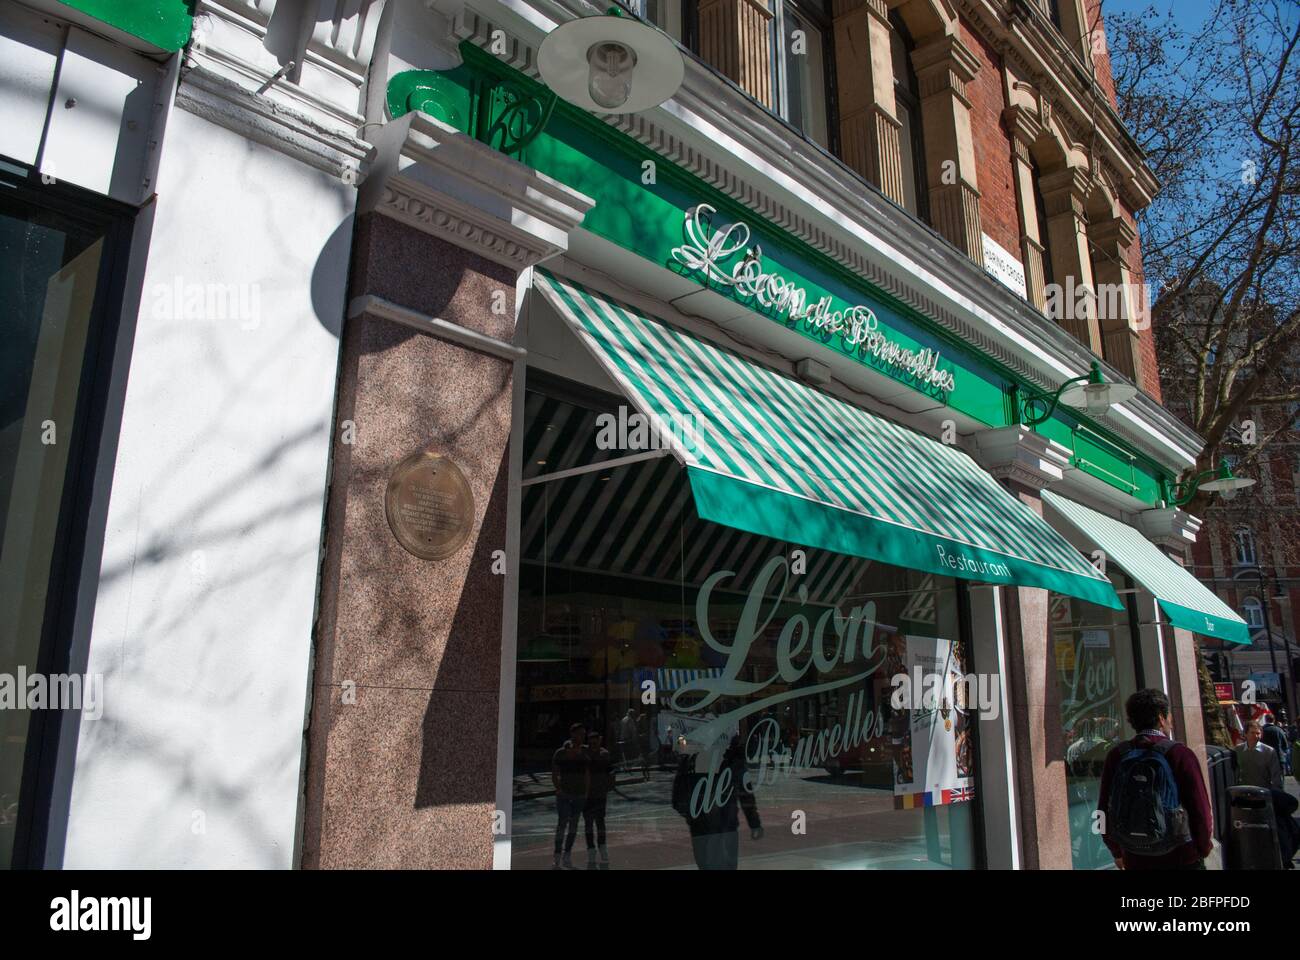 Green Cafe Restaurant Al Fresco Dining Leon de Bruxelles, 24 Cambridge Circus, London, WC2H Stock Photo